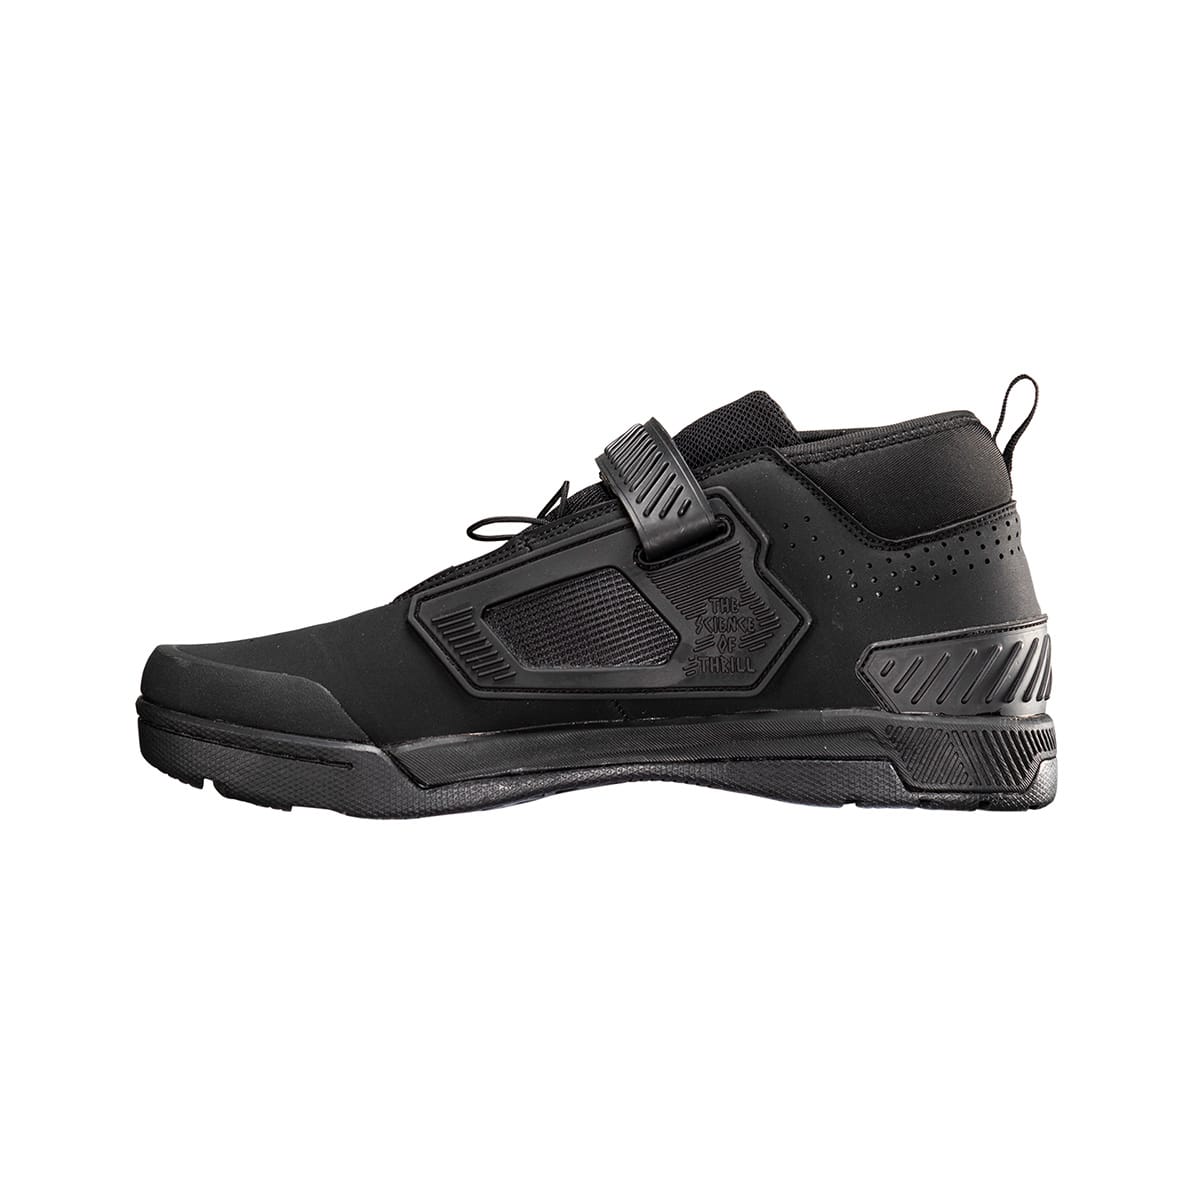 Chaussures VTT LEATT CLIP 4.0 Noir